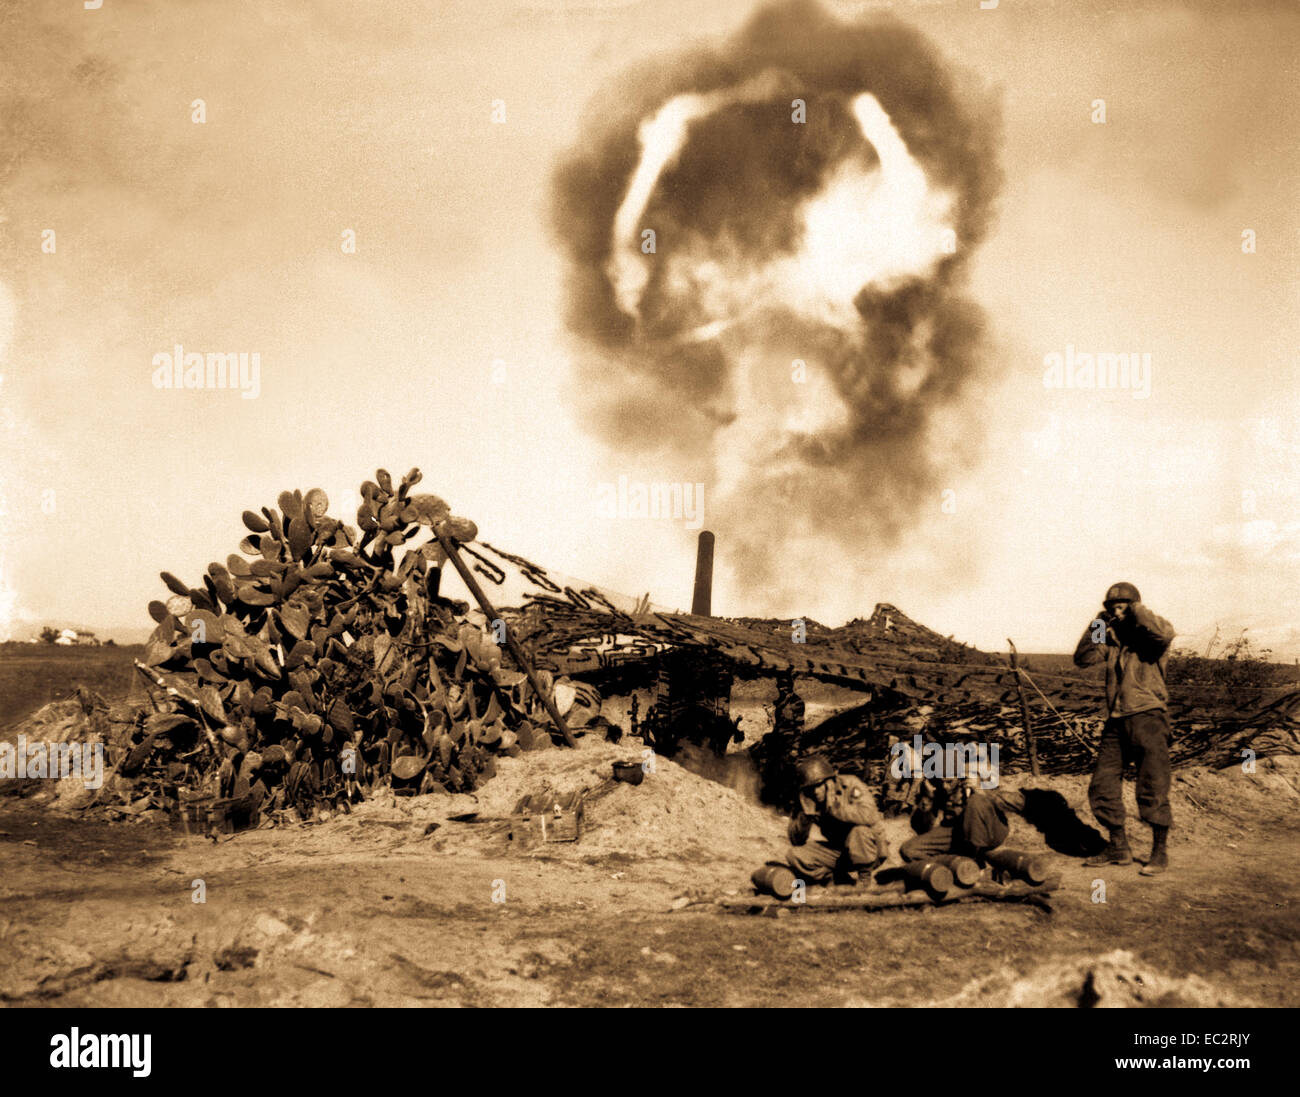 Long Tom parle. un canon de 155 mm ('long tom') est le feu par les troupes américaines. Nettuno, Italie. 13 février 1944. Bonnard. (Armée).nara Dossier #  : 111-sc-187704.war et conflit d'adresses #  : 1029 Banque D'Images